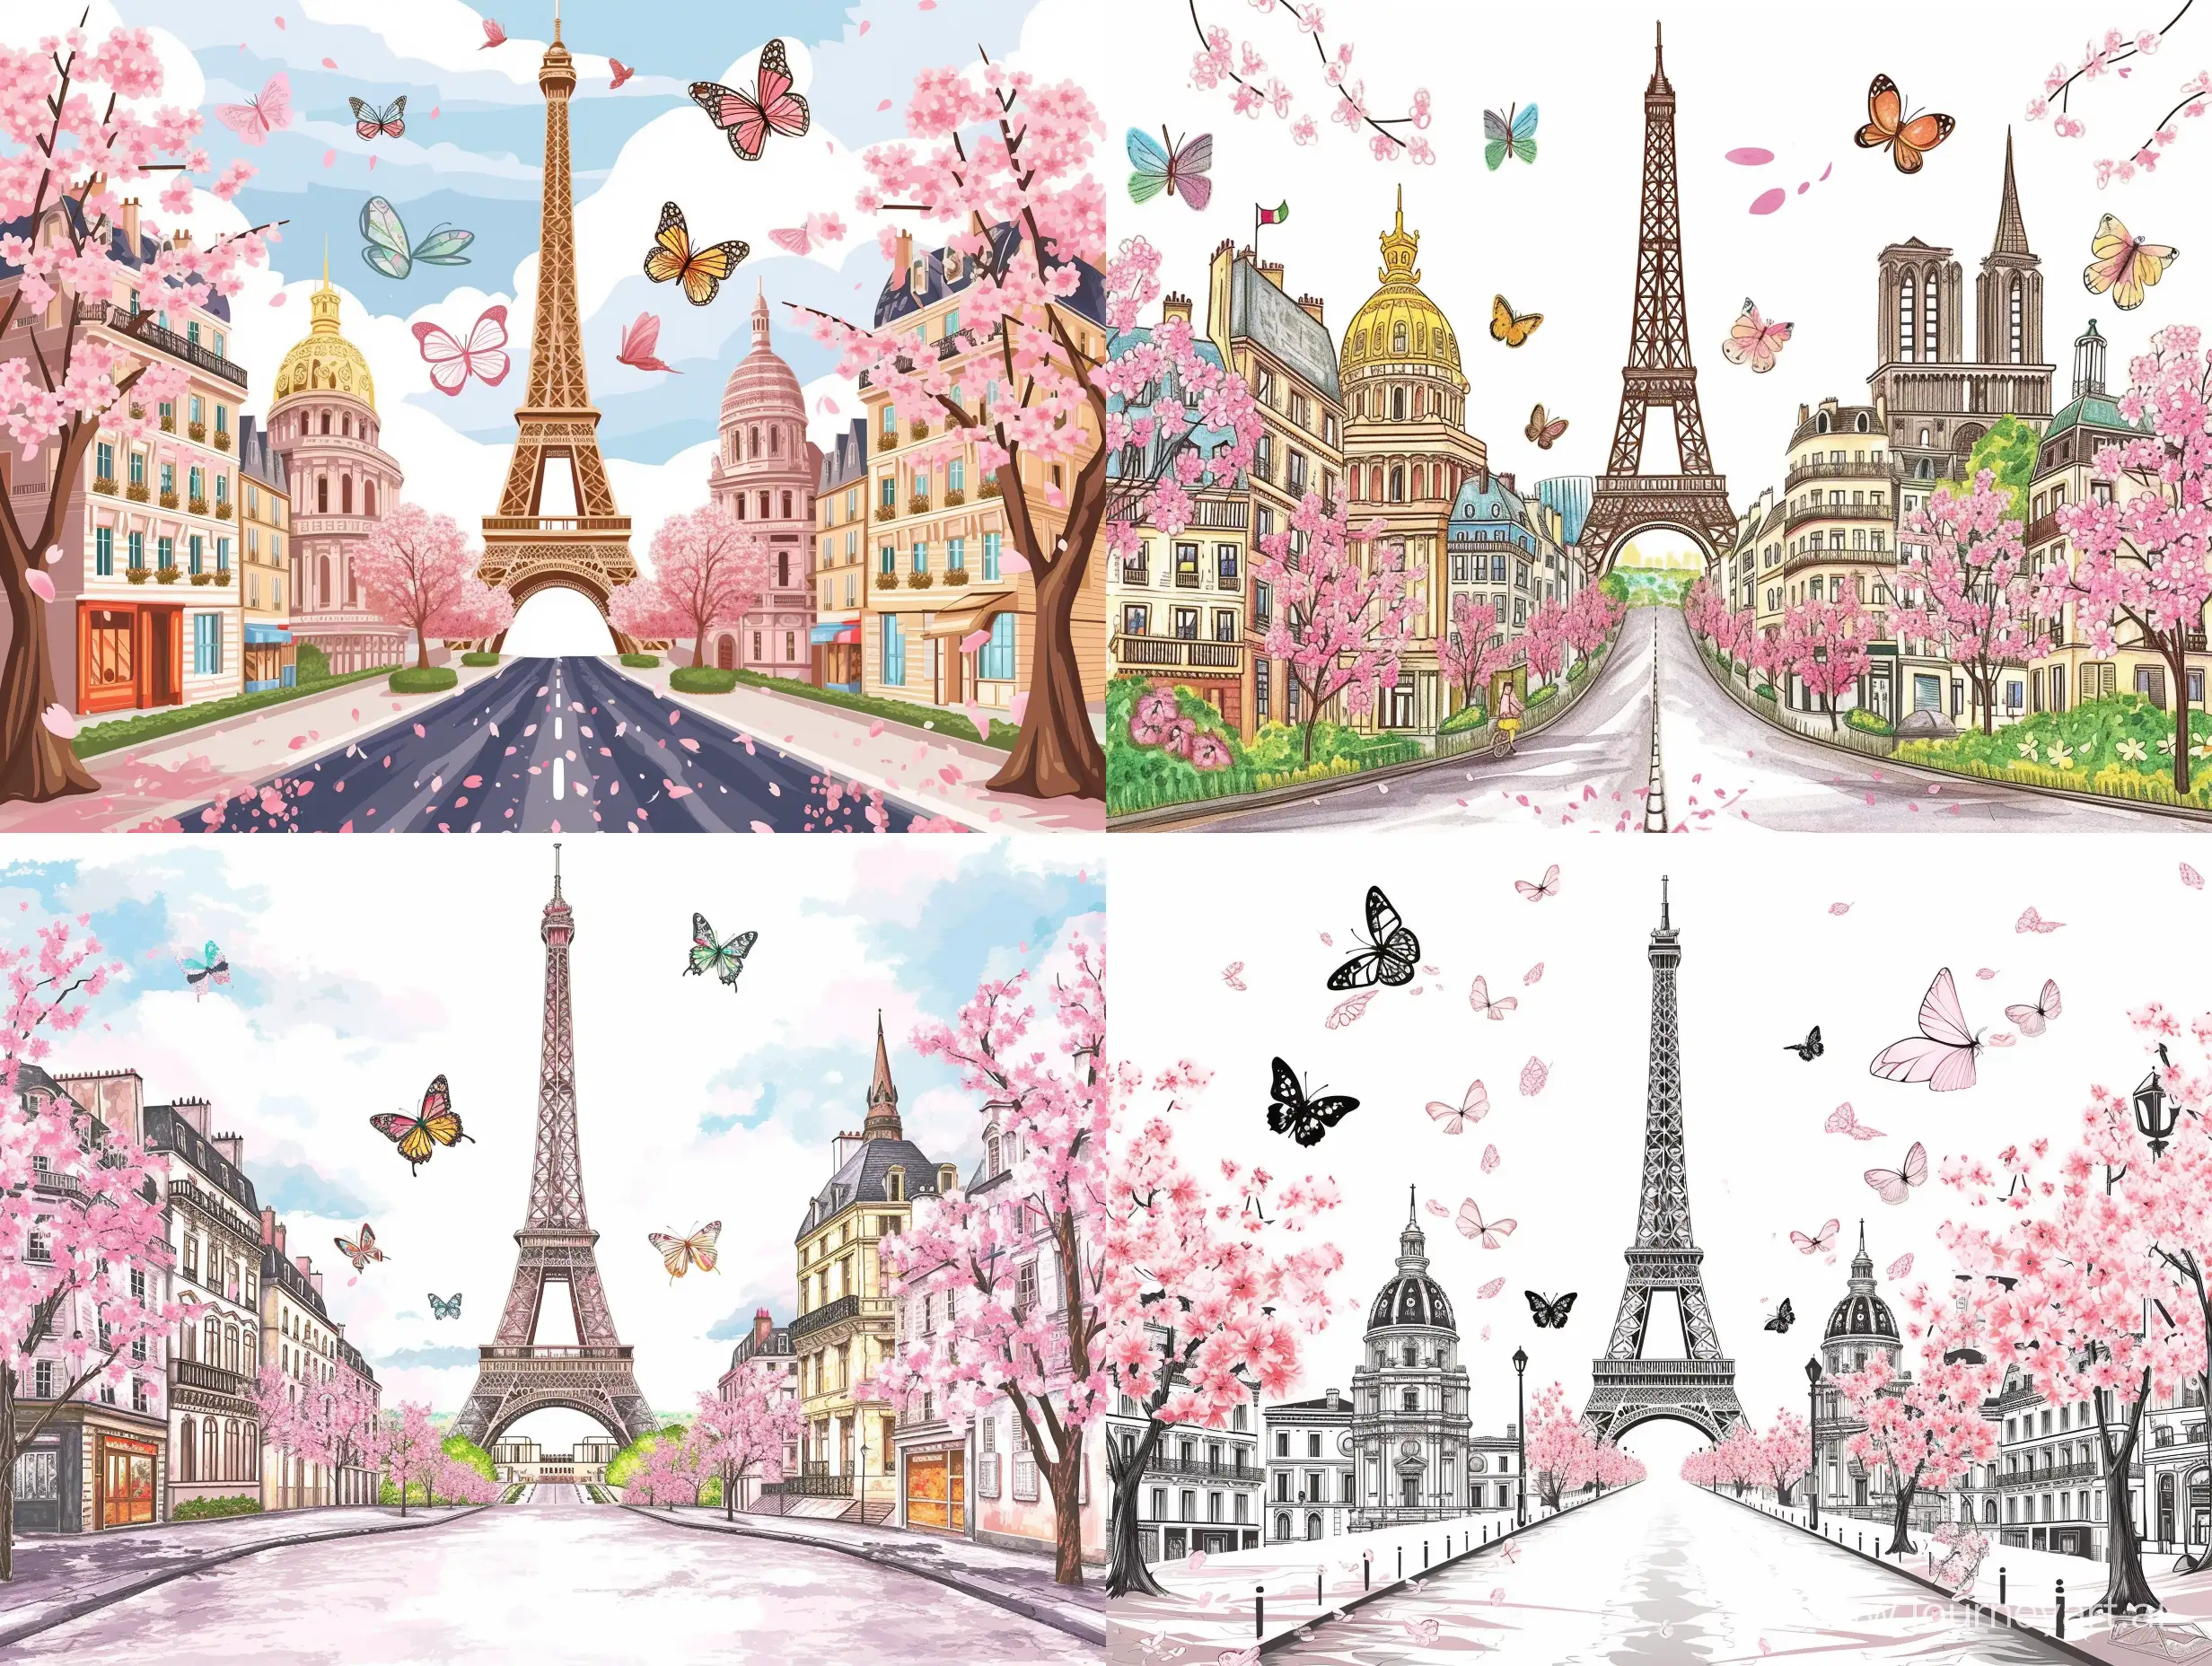 巴黎埃菲尔铁塔在中间,道路两边是法国的著名建筑,还有粉色的樱花树,蝴蝶飞舞,是手绘矢量图